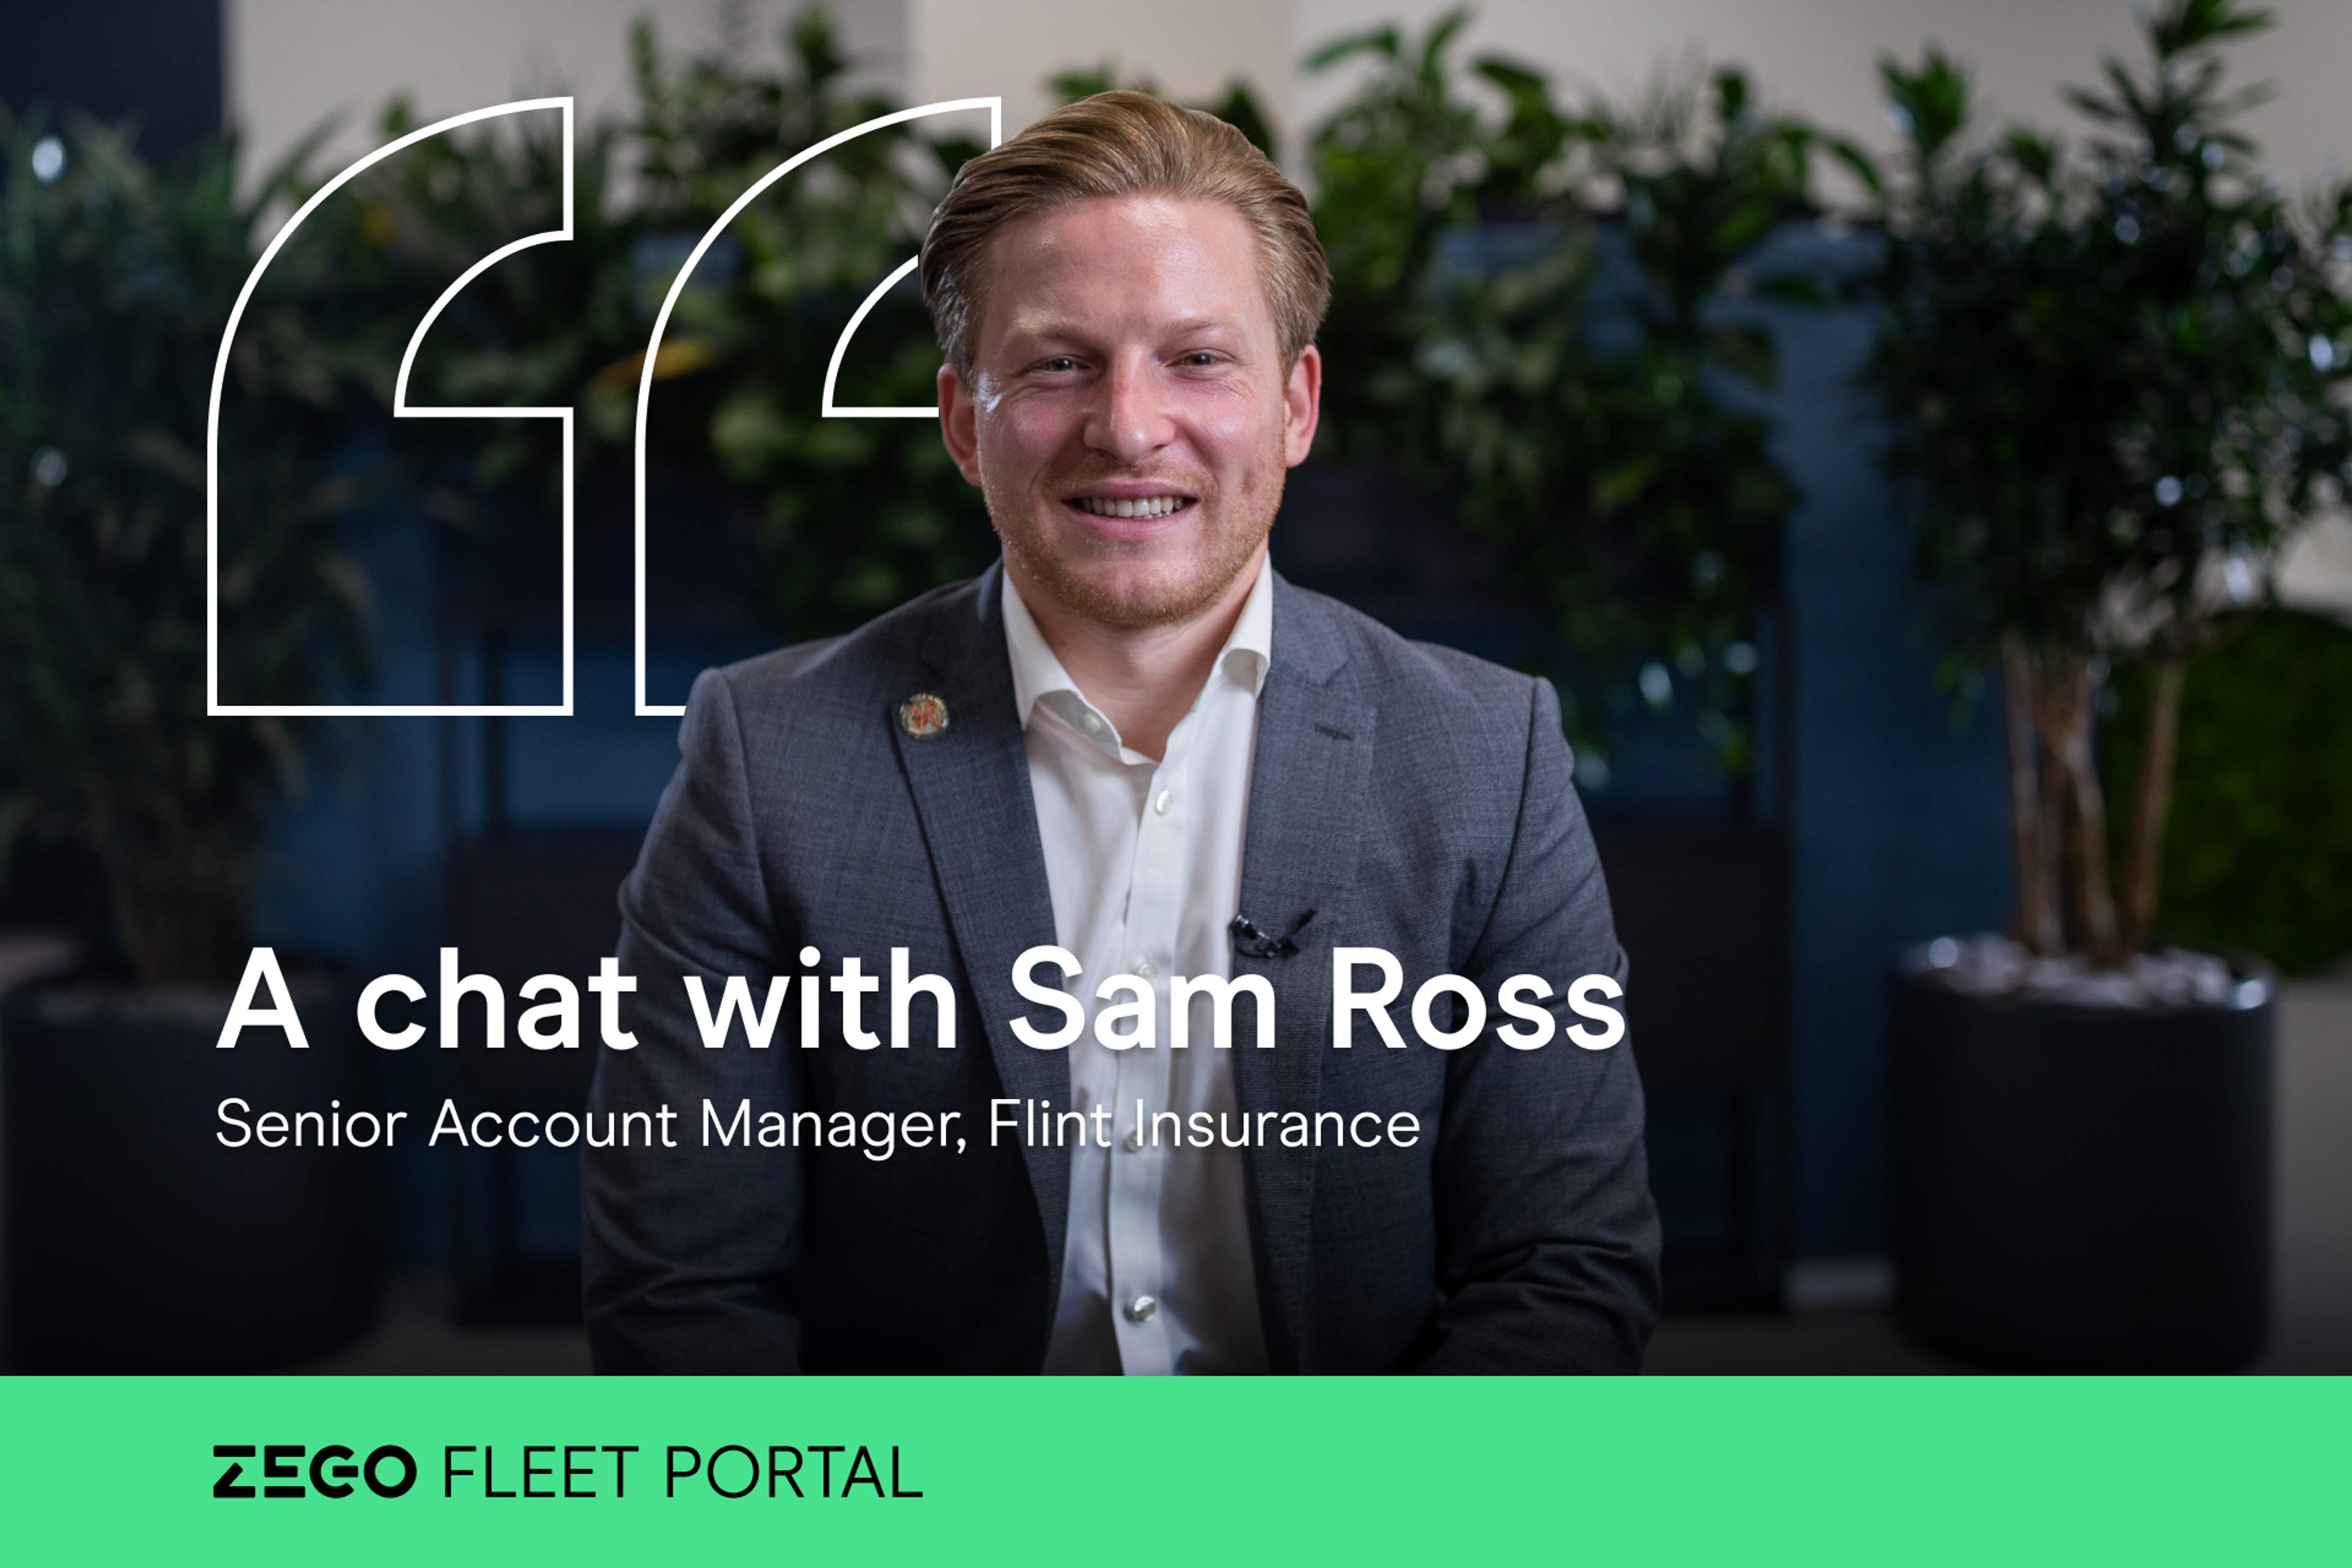 Fleet Portal: A Chat With Sam Ross, Flint Insurance